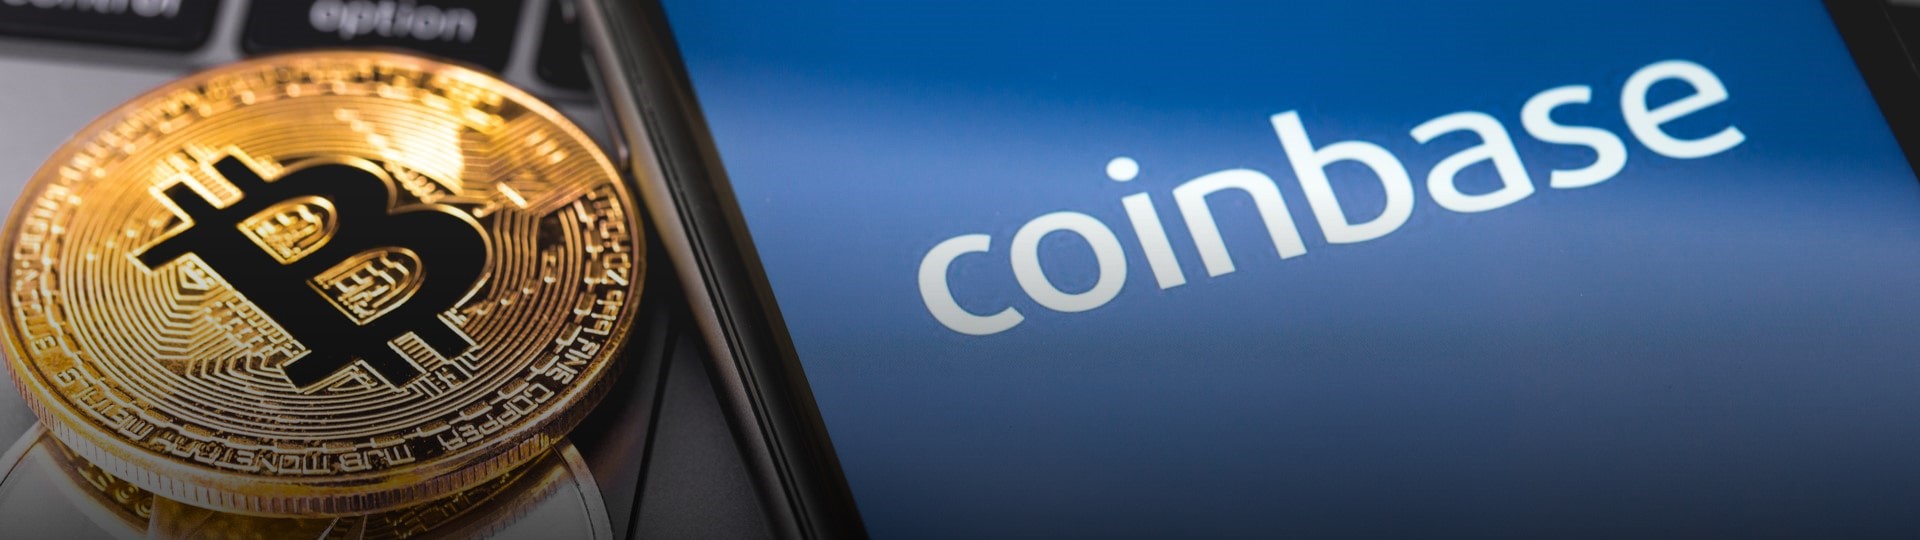 Bitcoin se obchoduje za 1,4 milionu korun. Pomáhá mu vstup Coinbase na burzu